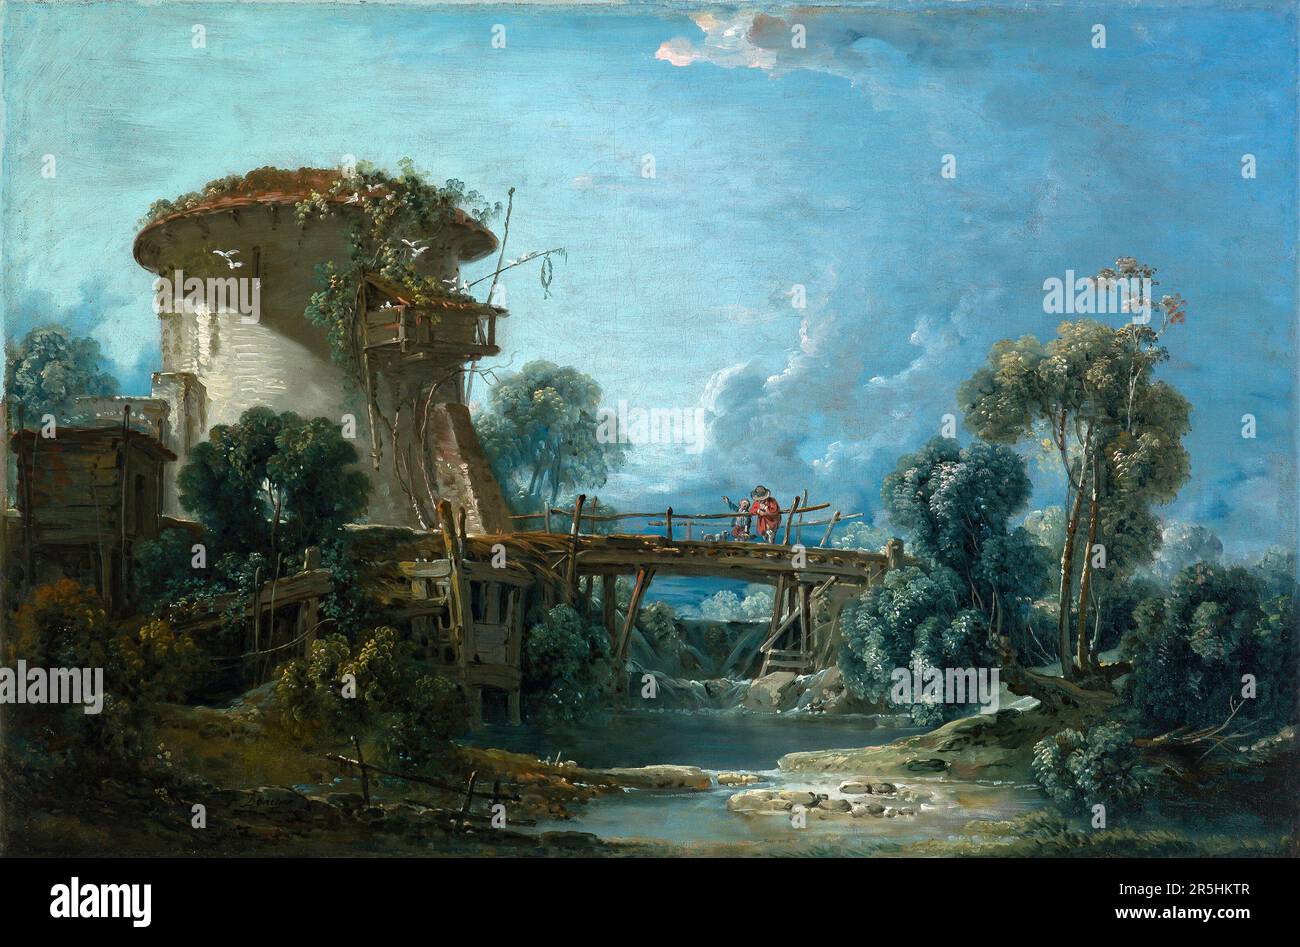 Der Dovecote, gemalt von Francois Bouchard 1758. Obwohl heute kaum bekannt, war Francois Boucher einer der berühmtesten Maler des 18. Jahrhunderts in Frankreich. Er malte klassische Themen im Barock- und Rokoko-Stil. Seine Schirmherrin war Madame de Pompadour, und sein Werk war so beliebt, dass er schließlich Premier Peintre du ROI (erster Maler des Königs) wurde, ein angesehener Gerichtsstand im Antiker-Regime. Stockfoto